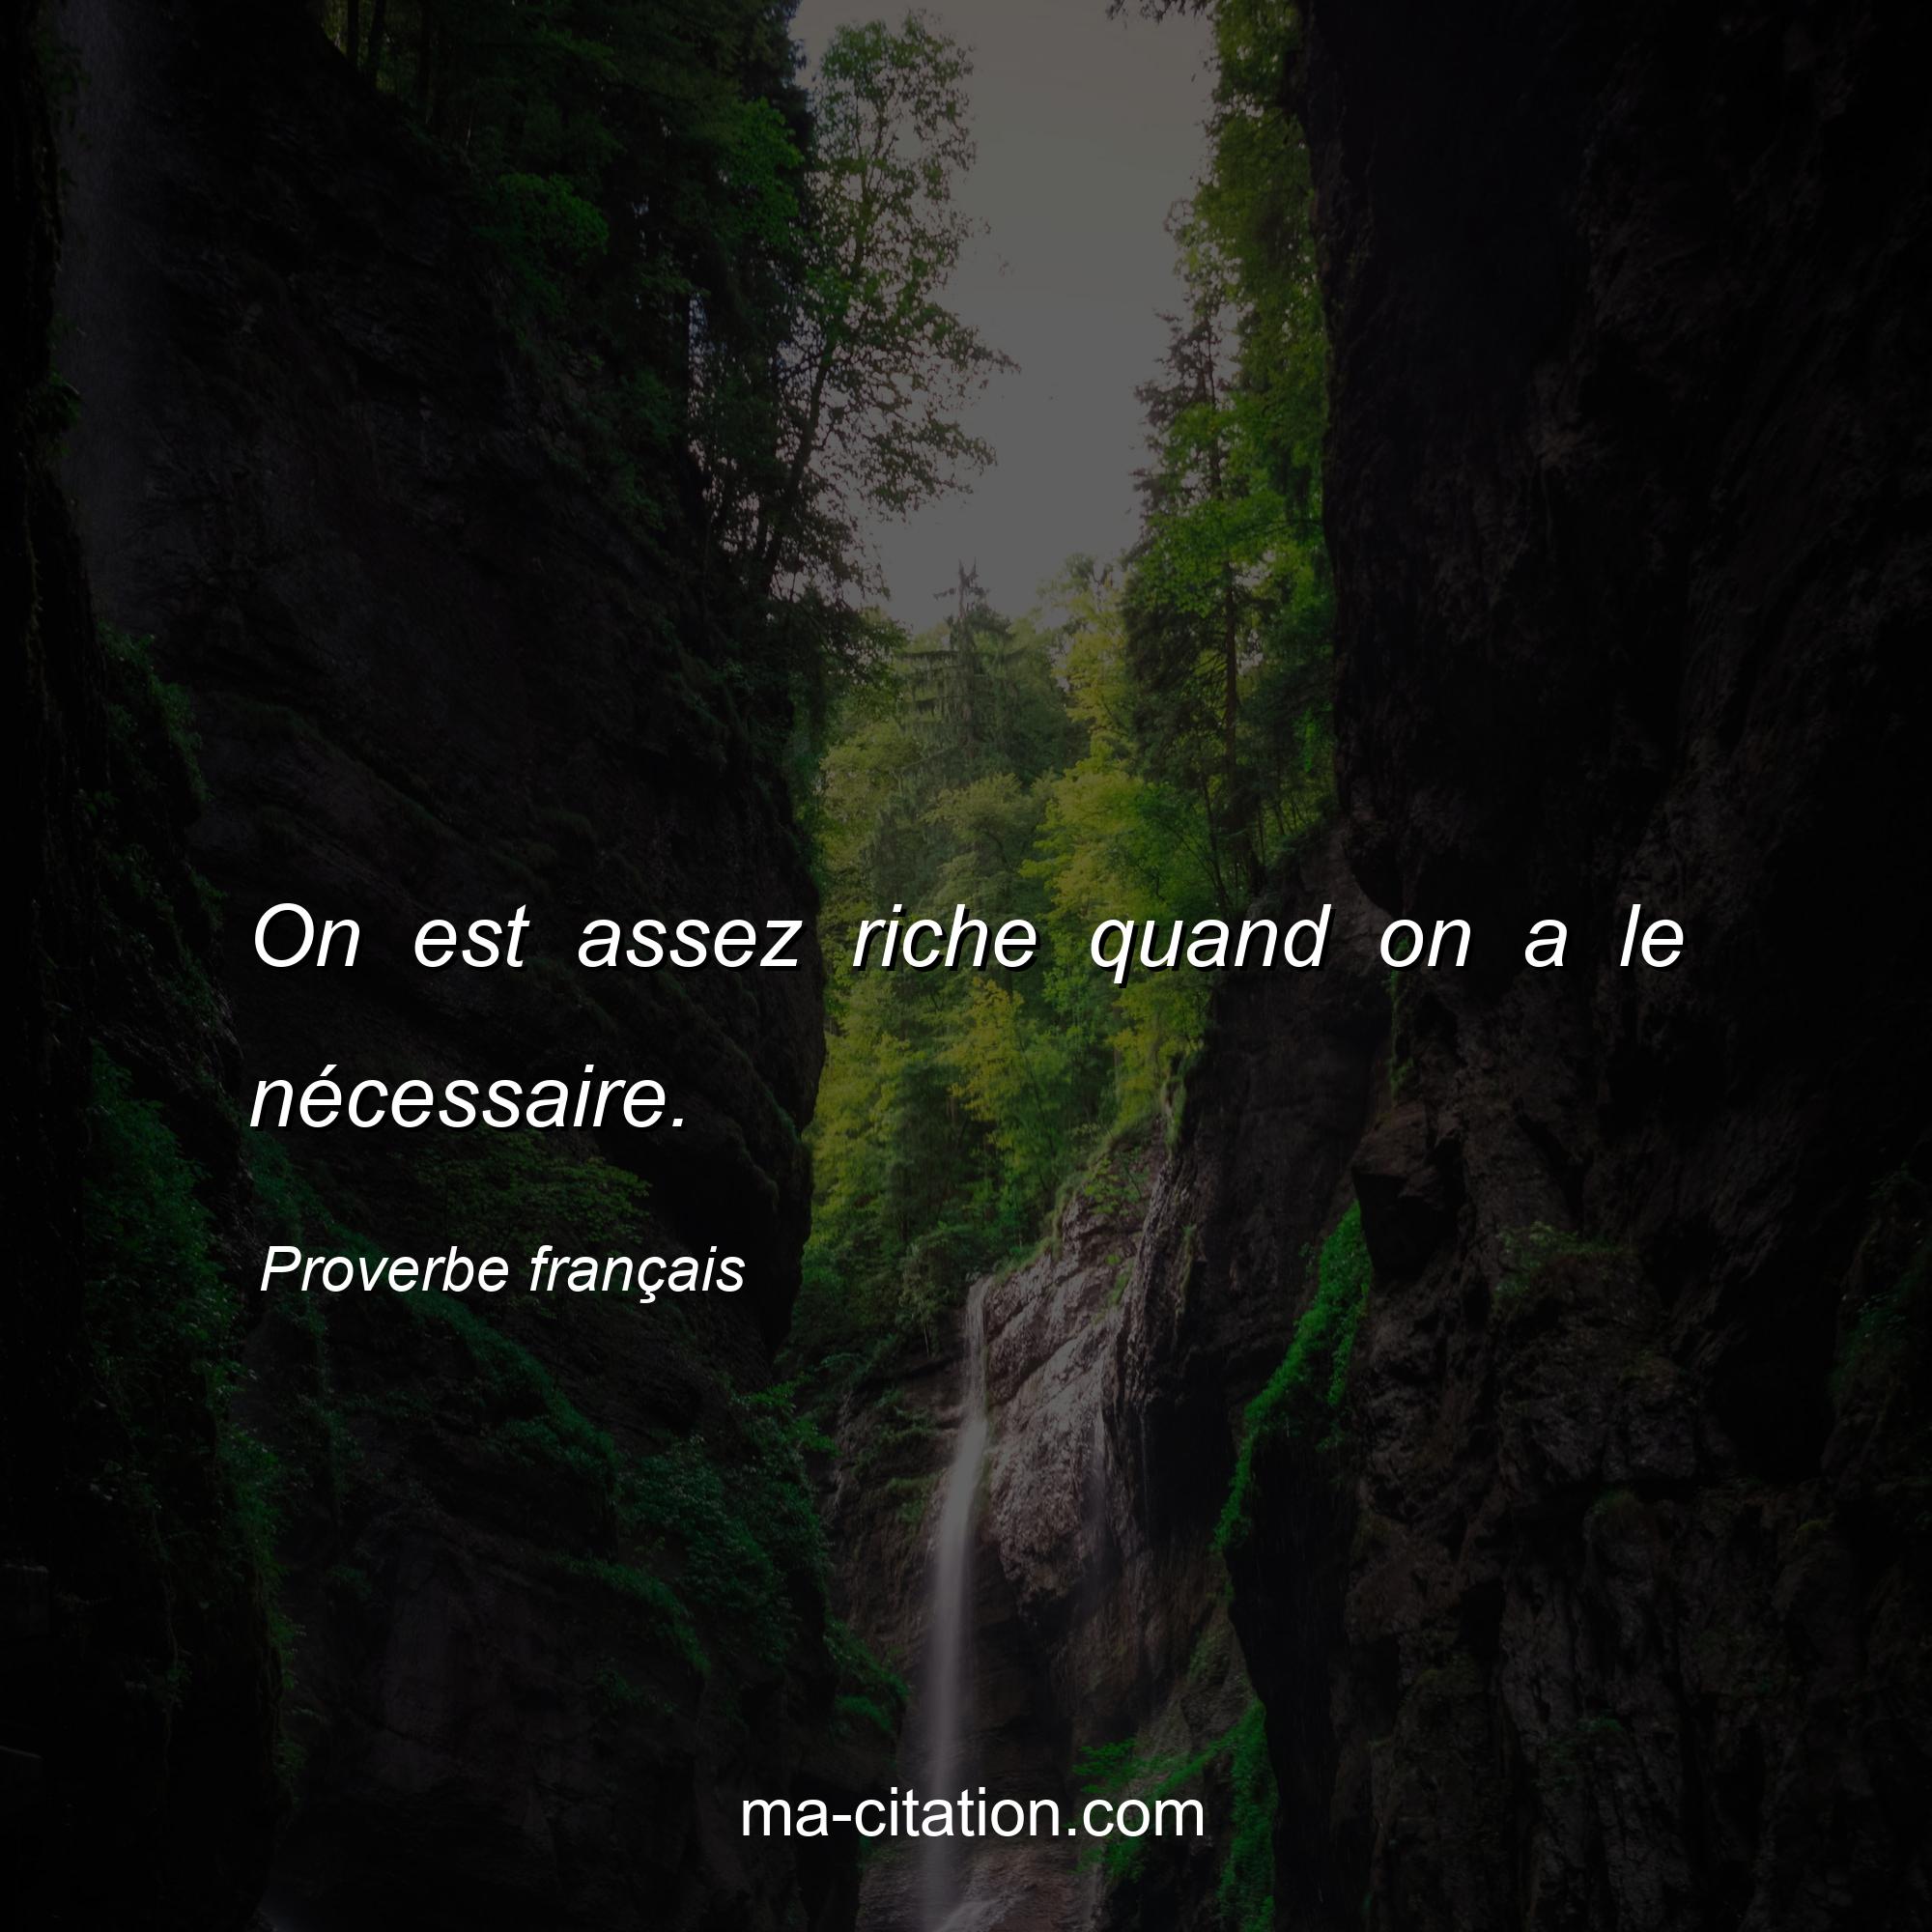 Proverbe français : On est assez riche quand on a le nécessaire.